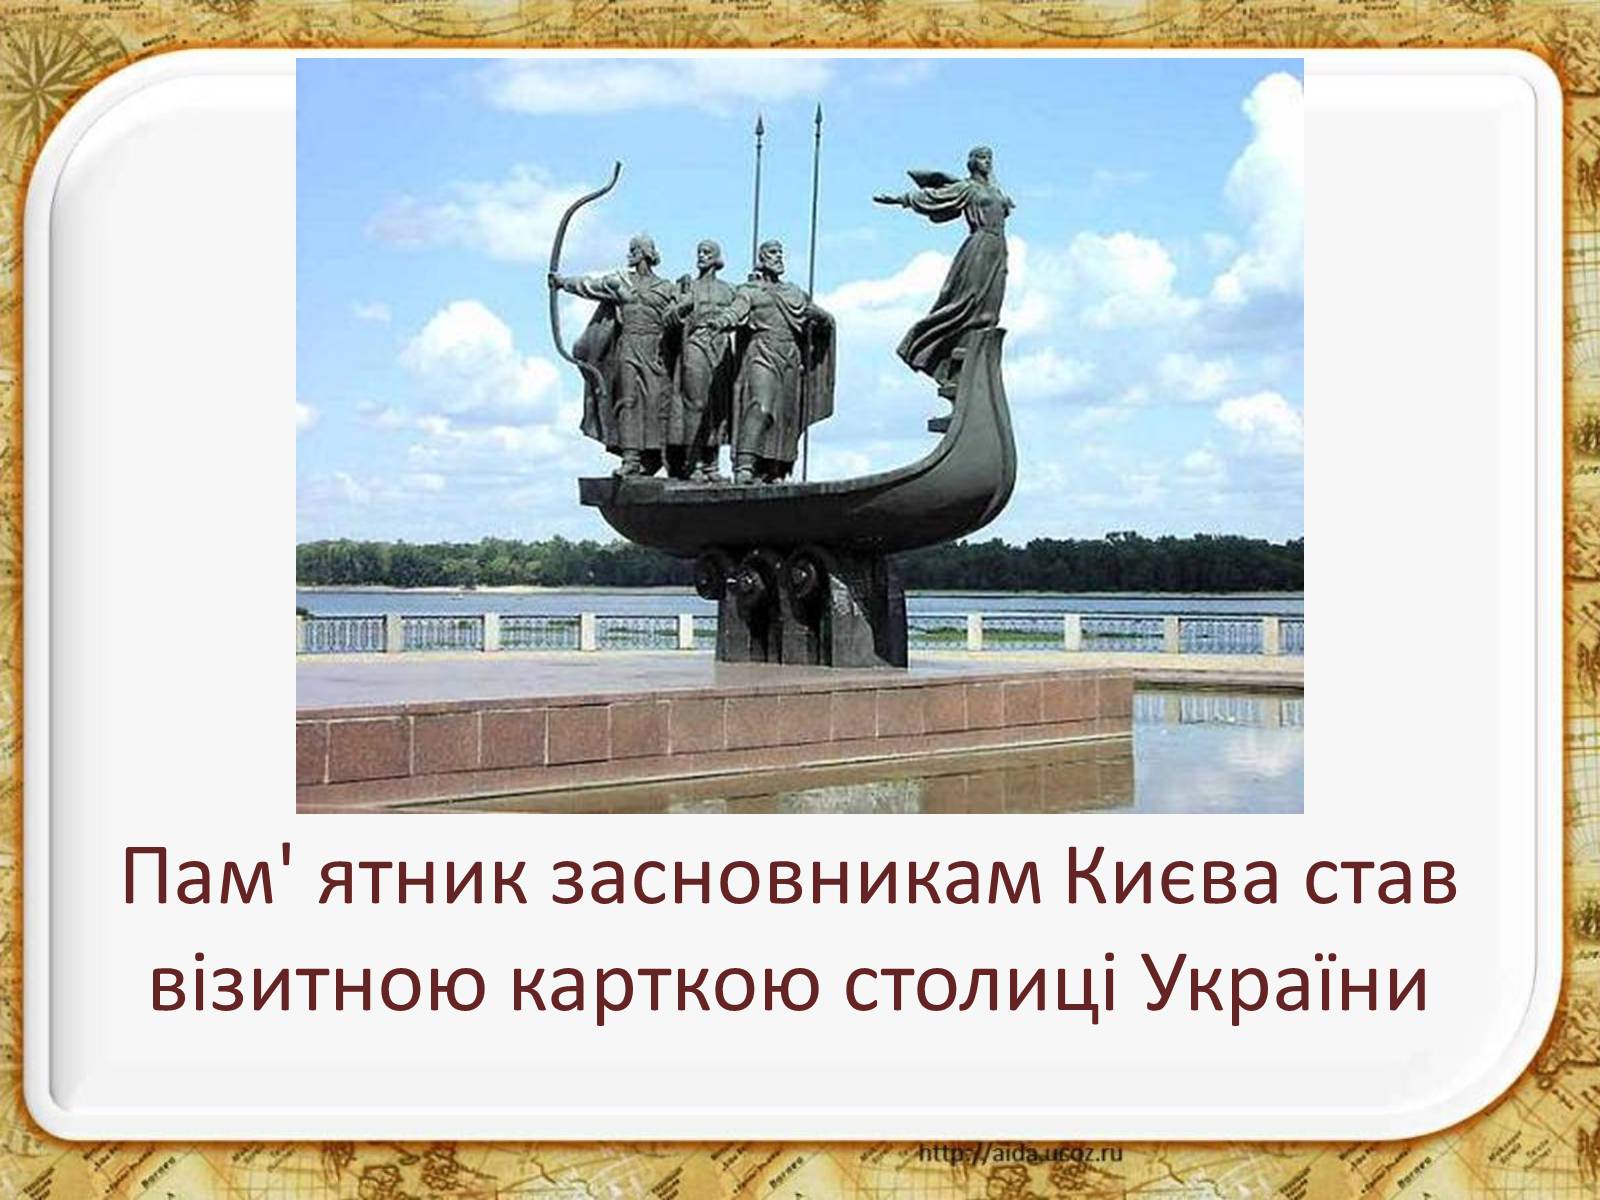 Киев щек хорив лыбедь